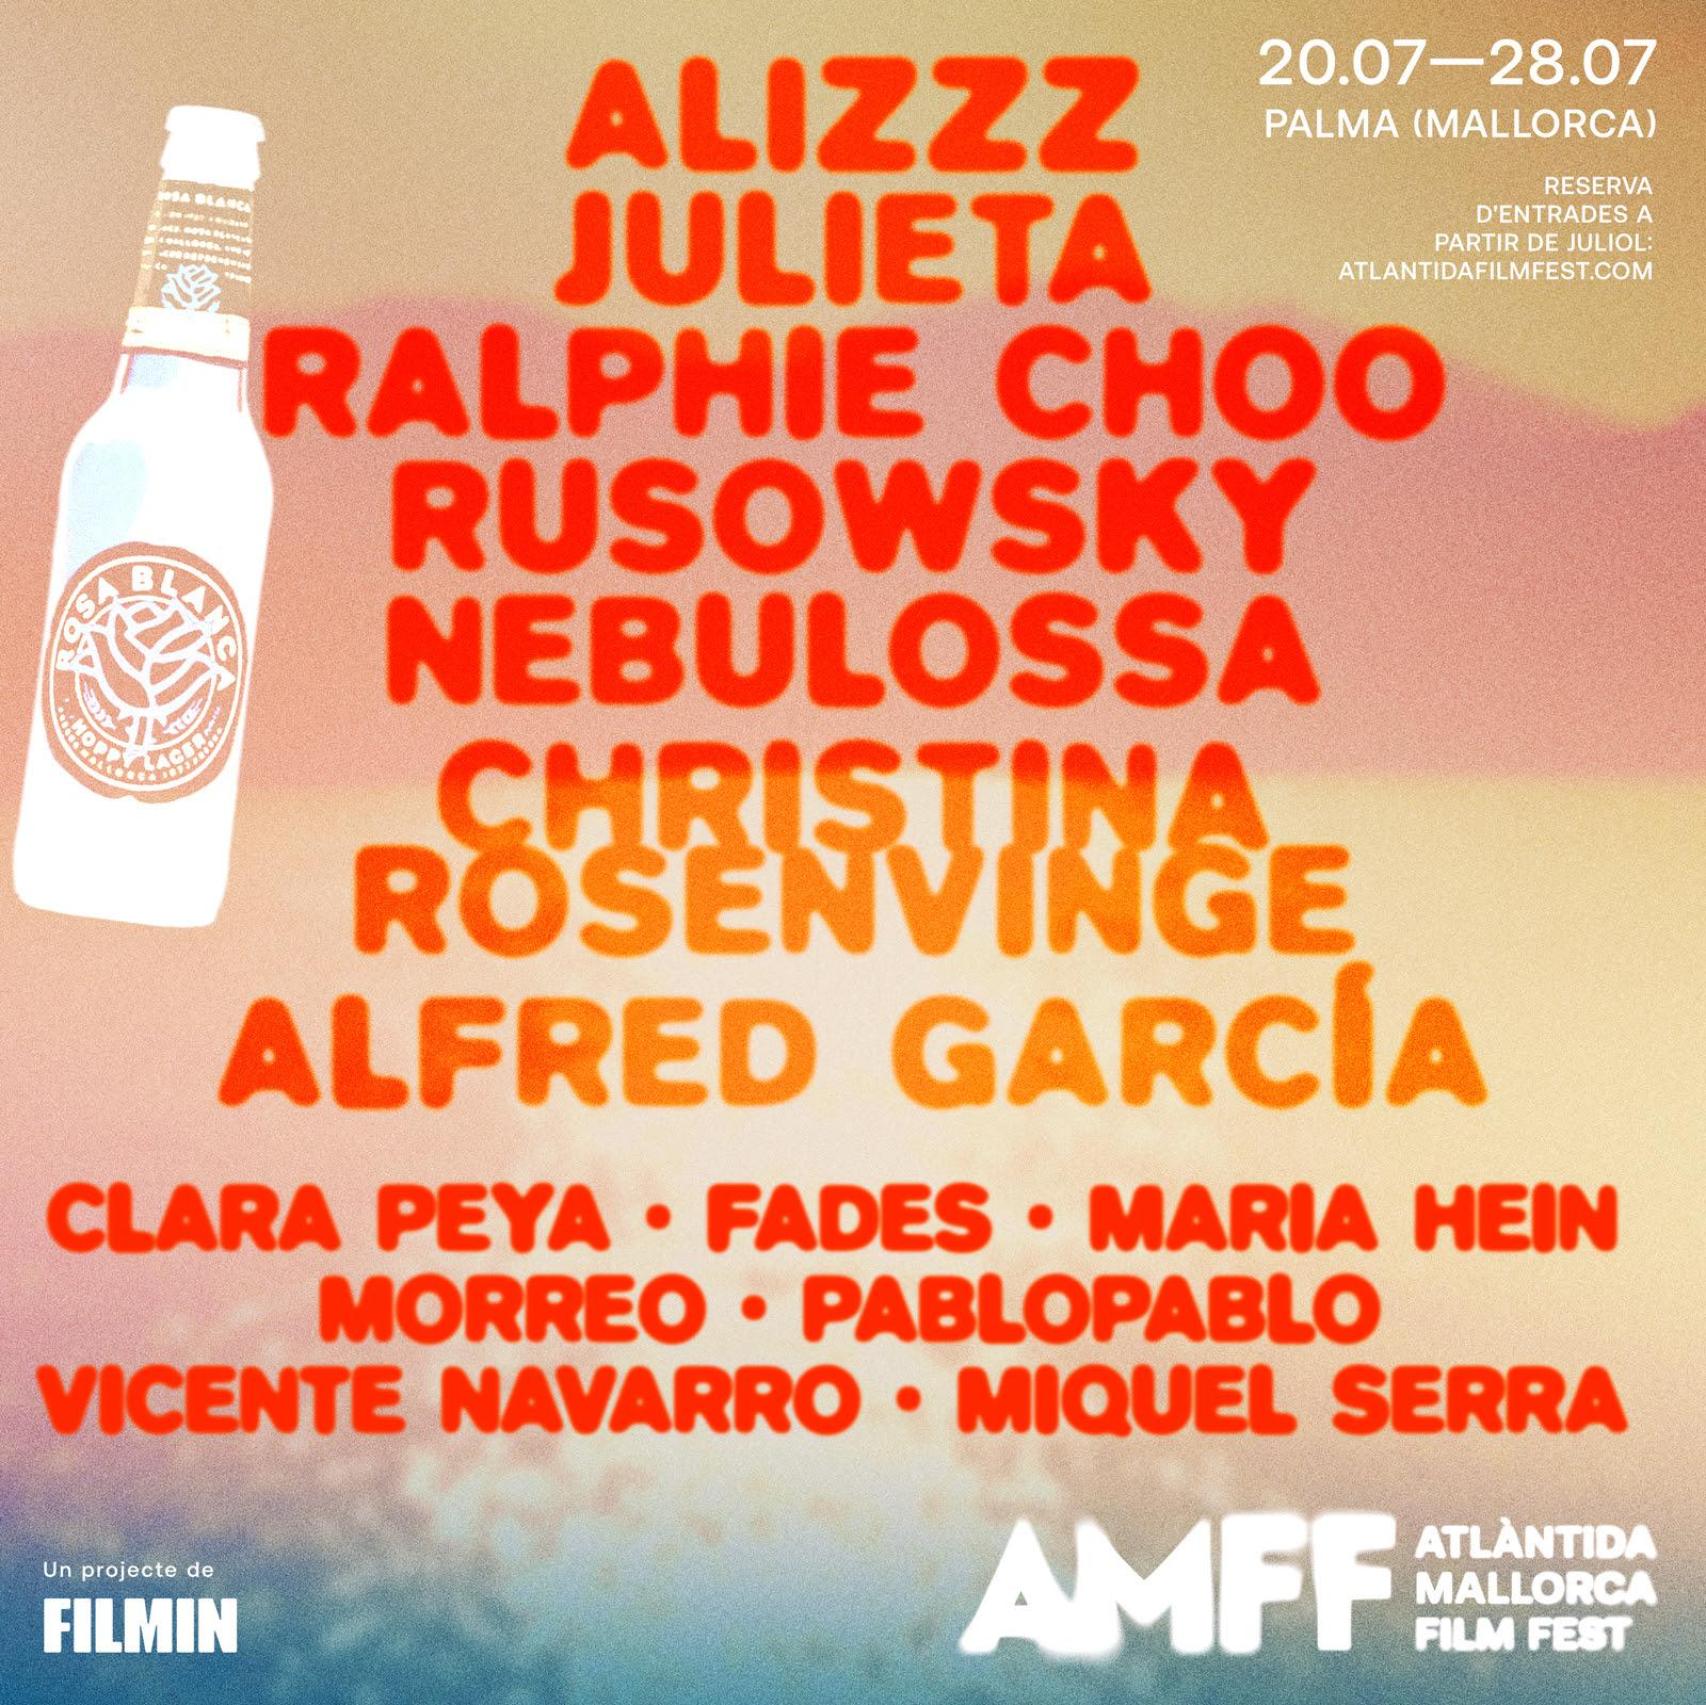 Cartel de las actuaciones musicales con motivo del Atlantida Film Fest